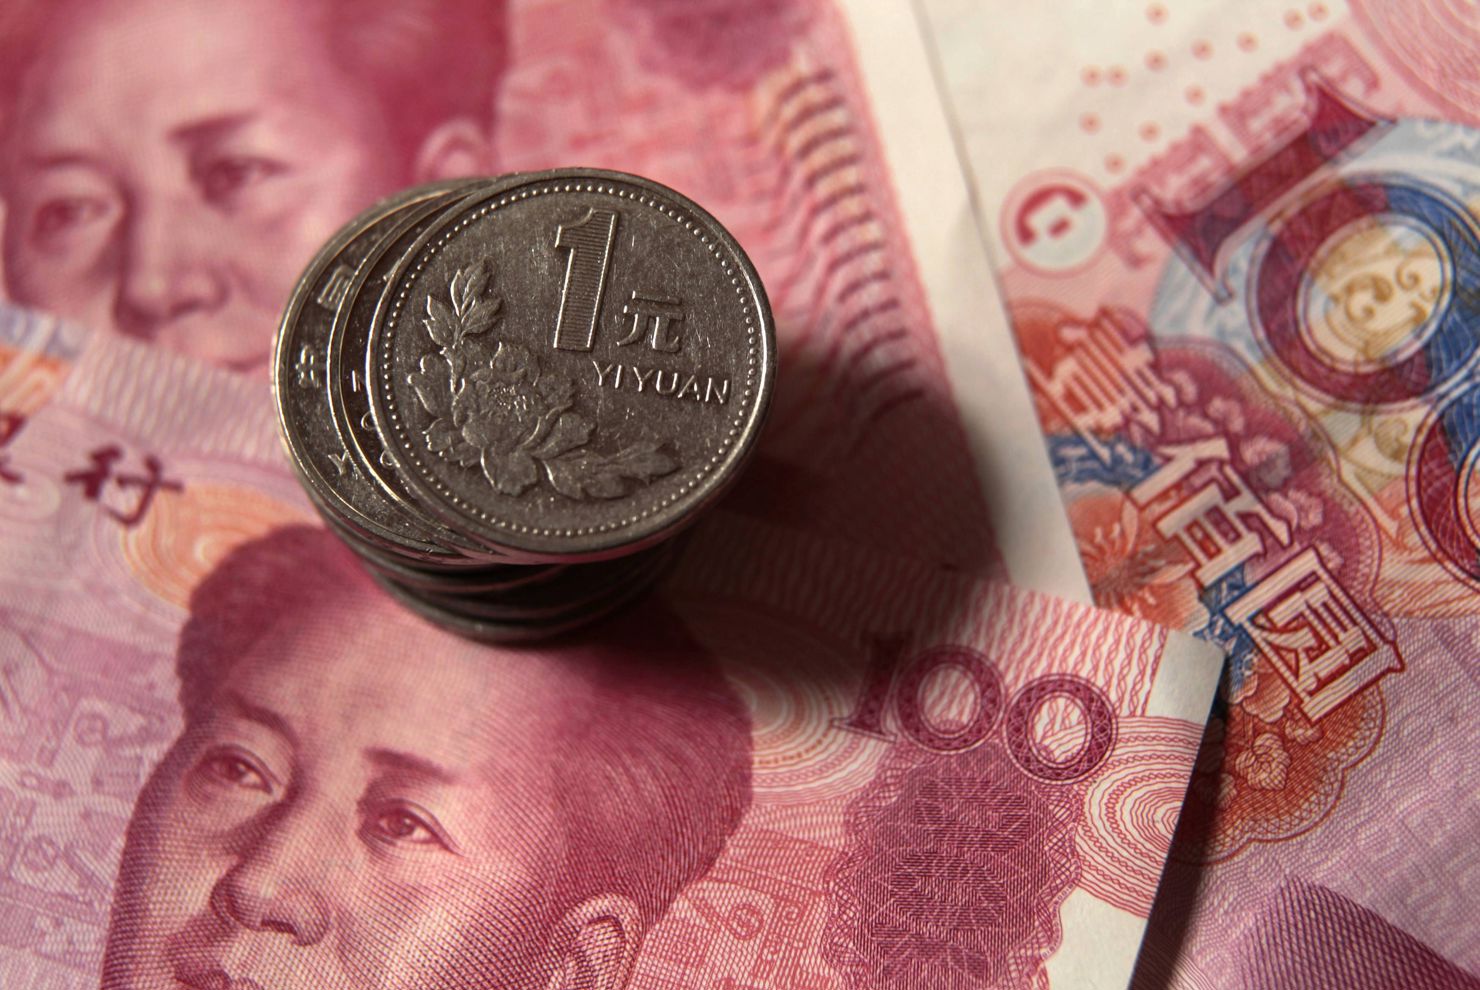 Trung Quốc đã xây dựng chiến lược quốc tế hoá đồng nhân dân tệ, chính thức đưa đồng tiền này vào nhóm các đồng tiền dự trữ của thế giới. Nguồn: Internet